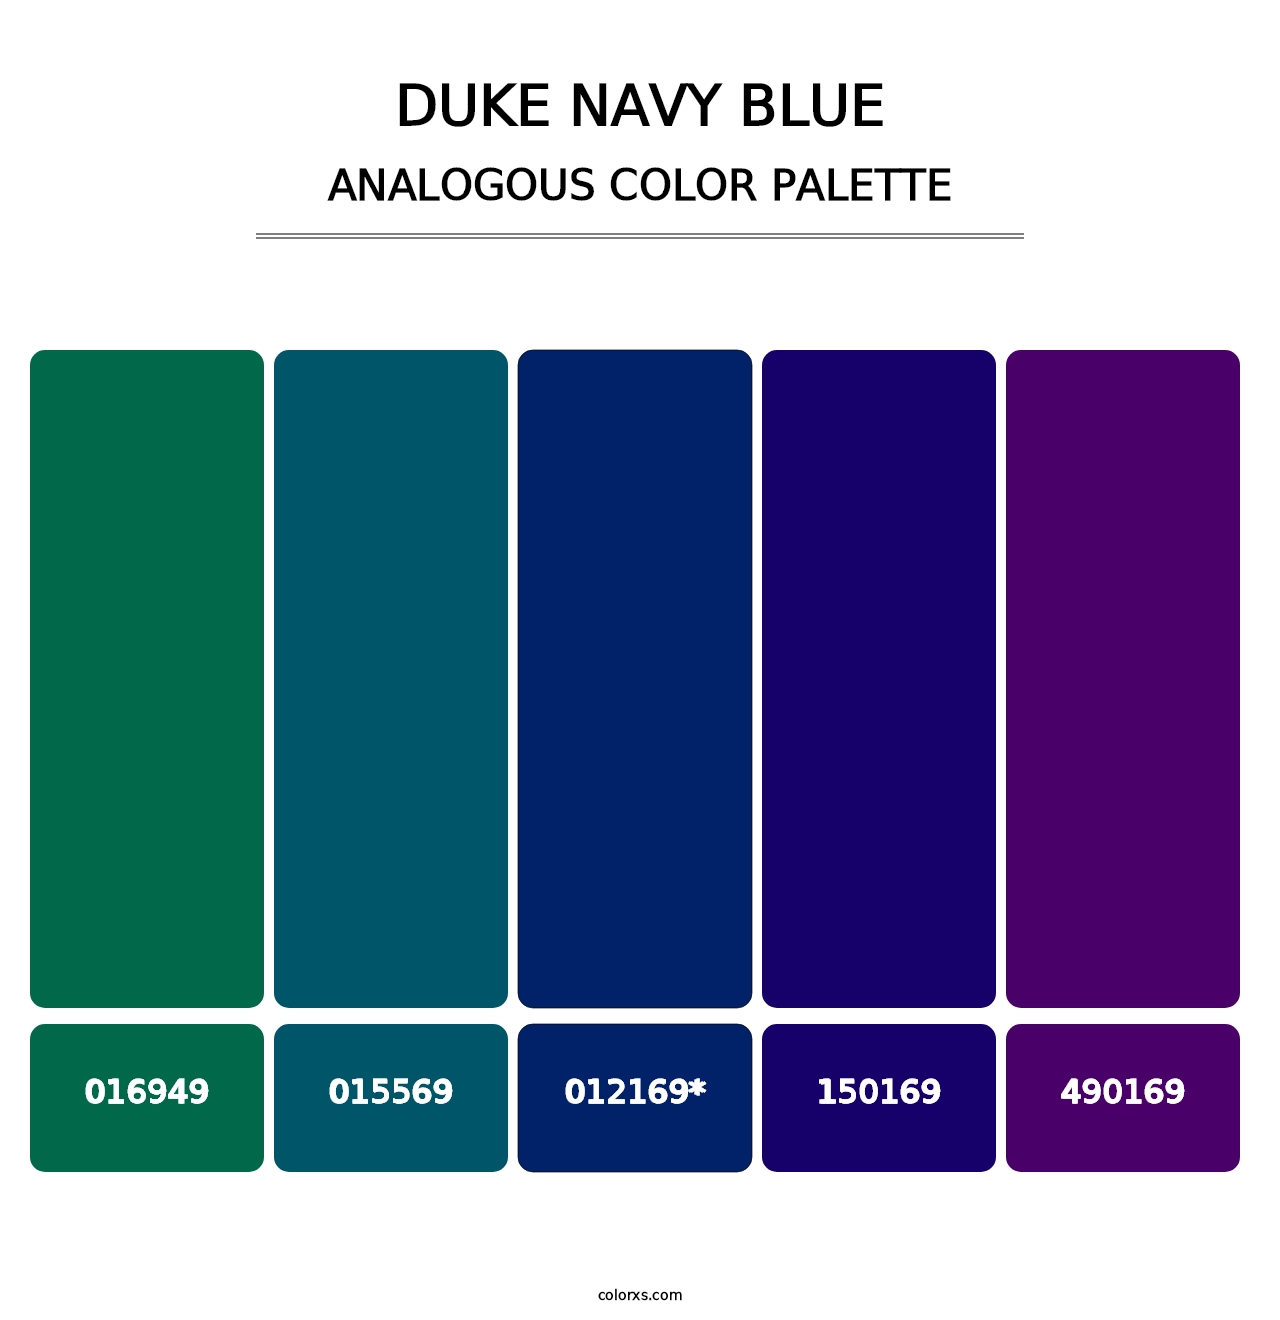 Duke Navy Blue - Analogous Color Palette